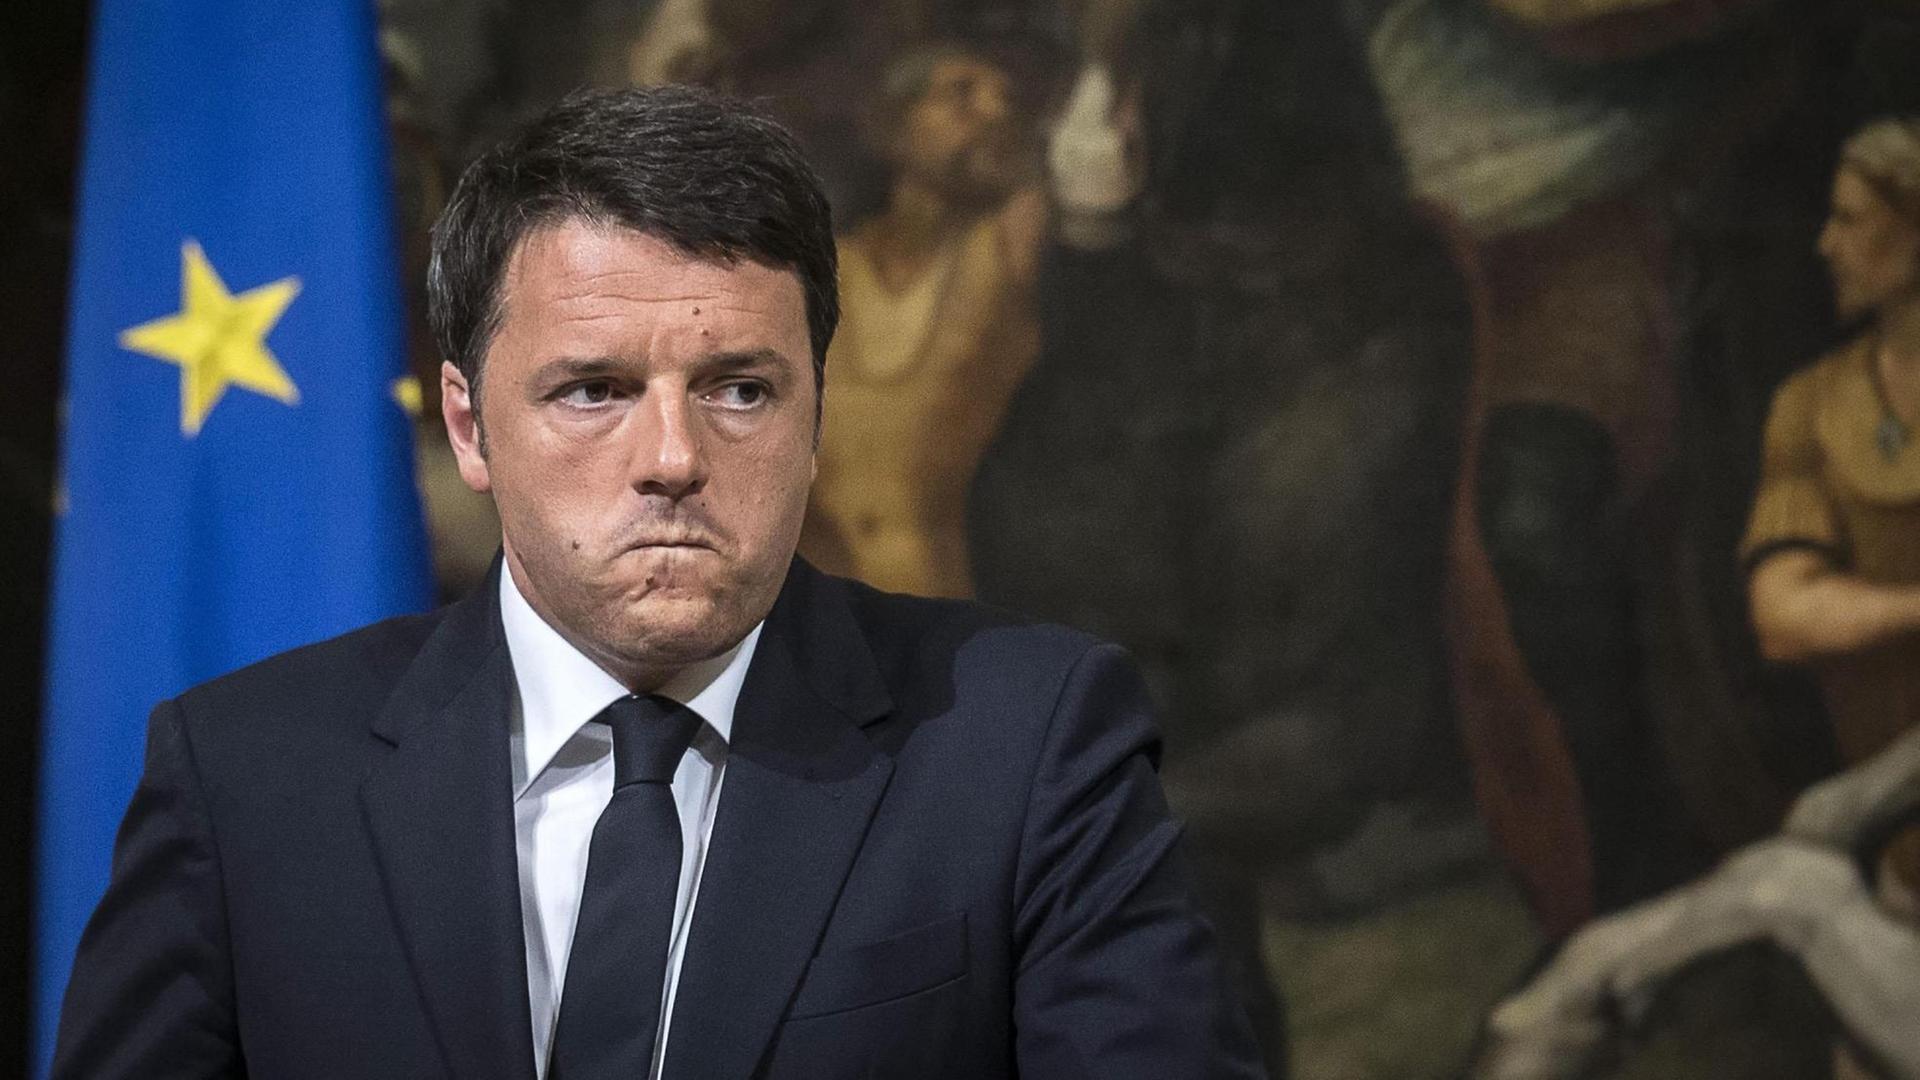 Italiens Ministerpräsident Matteo Renzi gibt bei einer Pressekonferenz bekannt, dass er die Leichen des gesunkenen Flüchtlingsboots bergen lassen will.